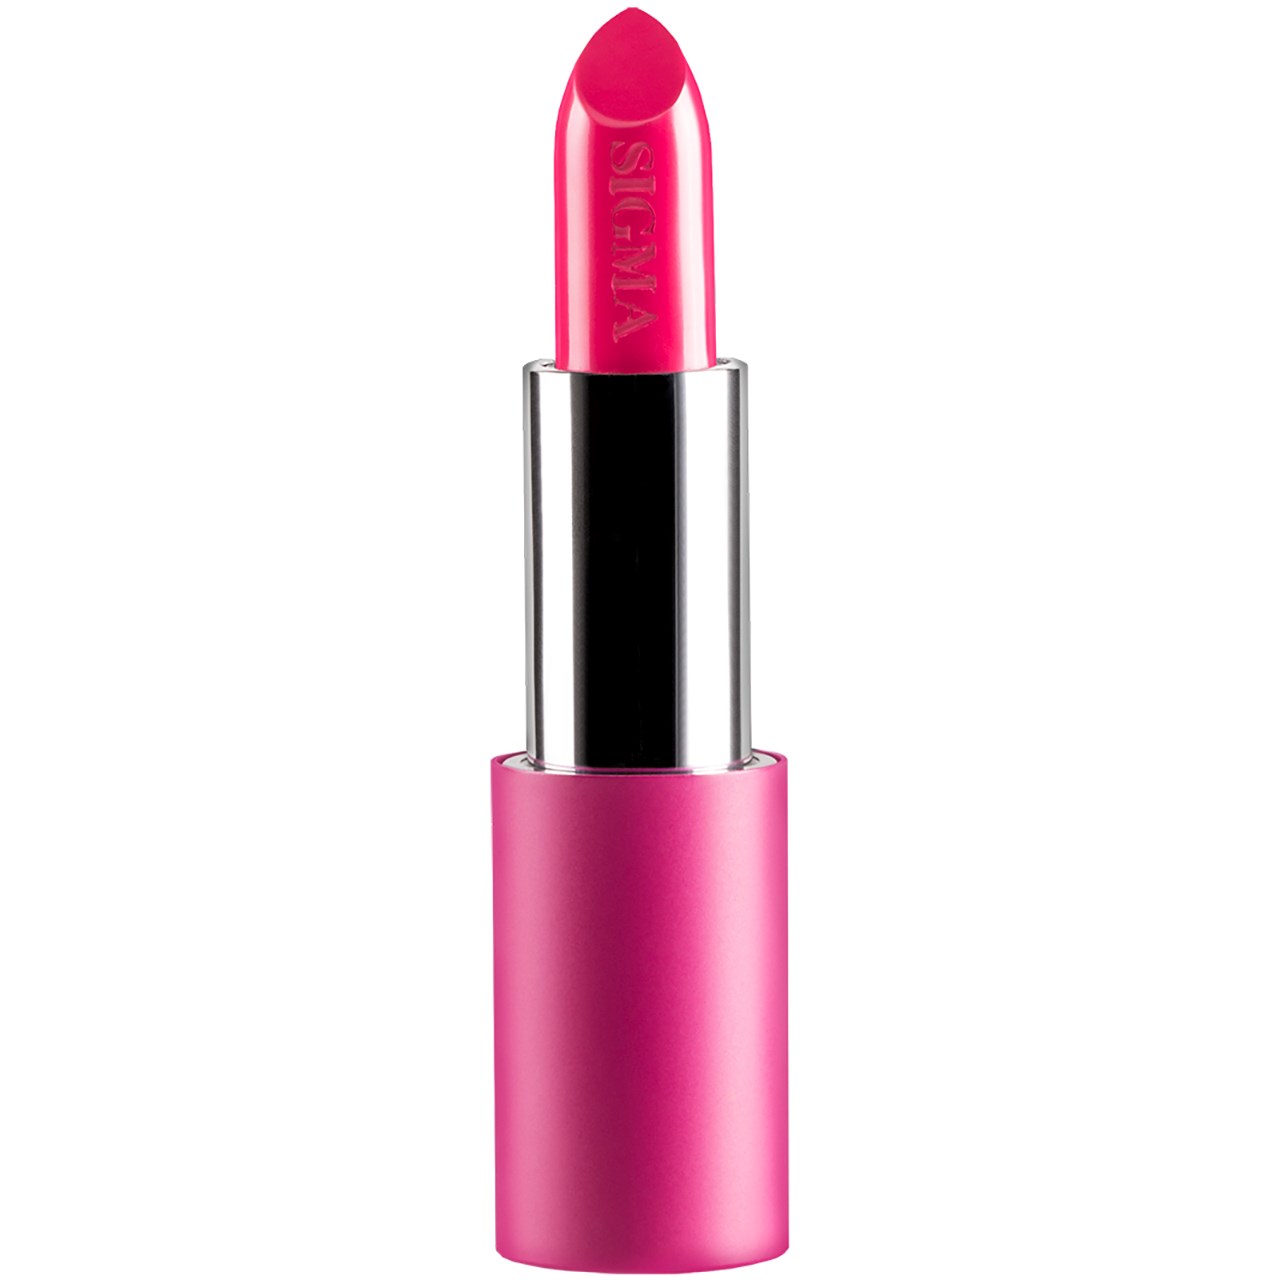 Sigma Beauty Beauty Power Stick - Sigma Pink